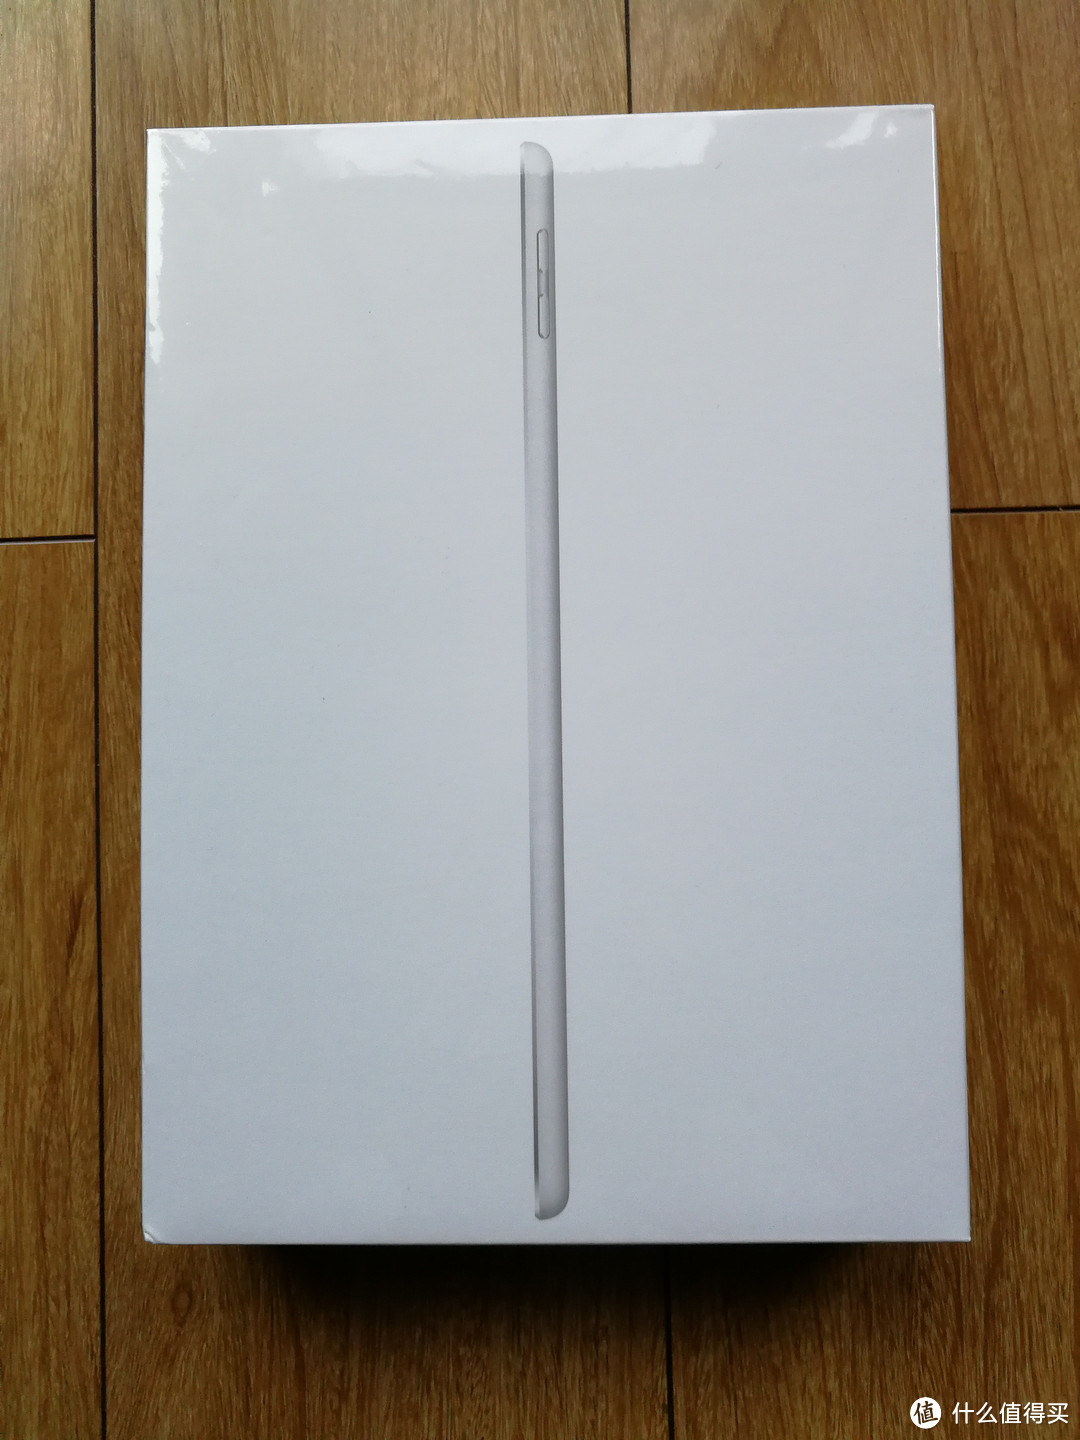 Apple 苹果  2017款iPad 平板电脑 简评